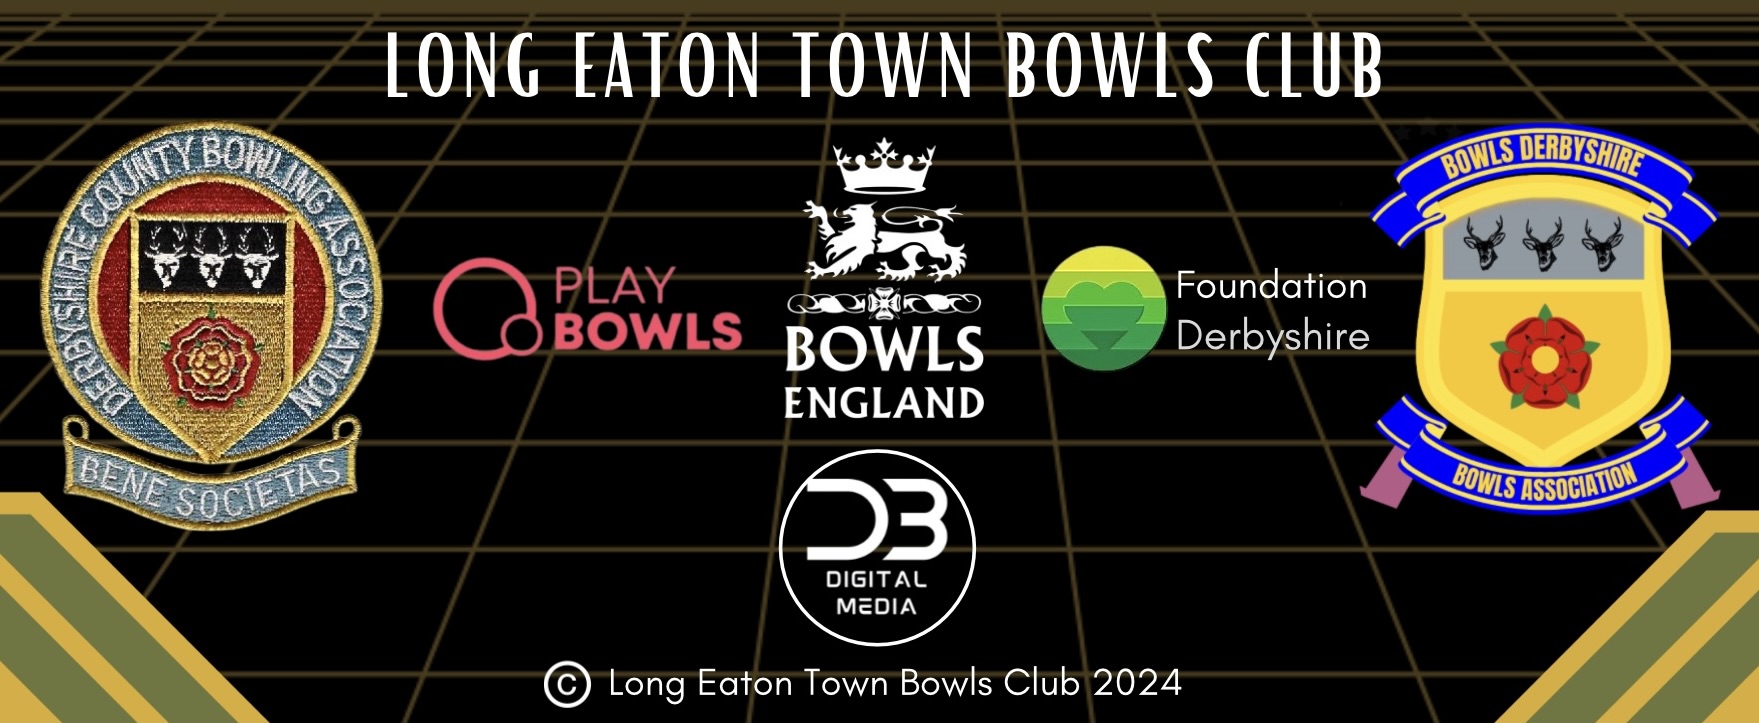 Long Eaton Town Bowls Club Club League